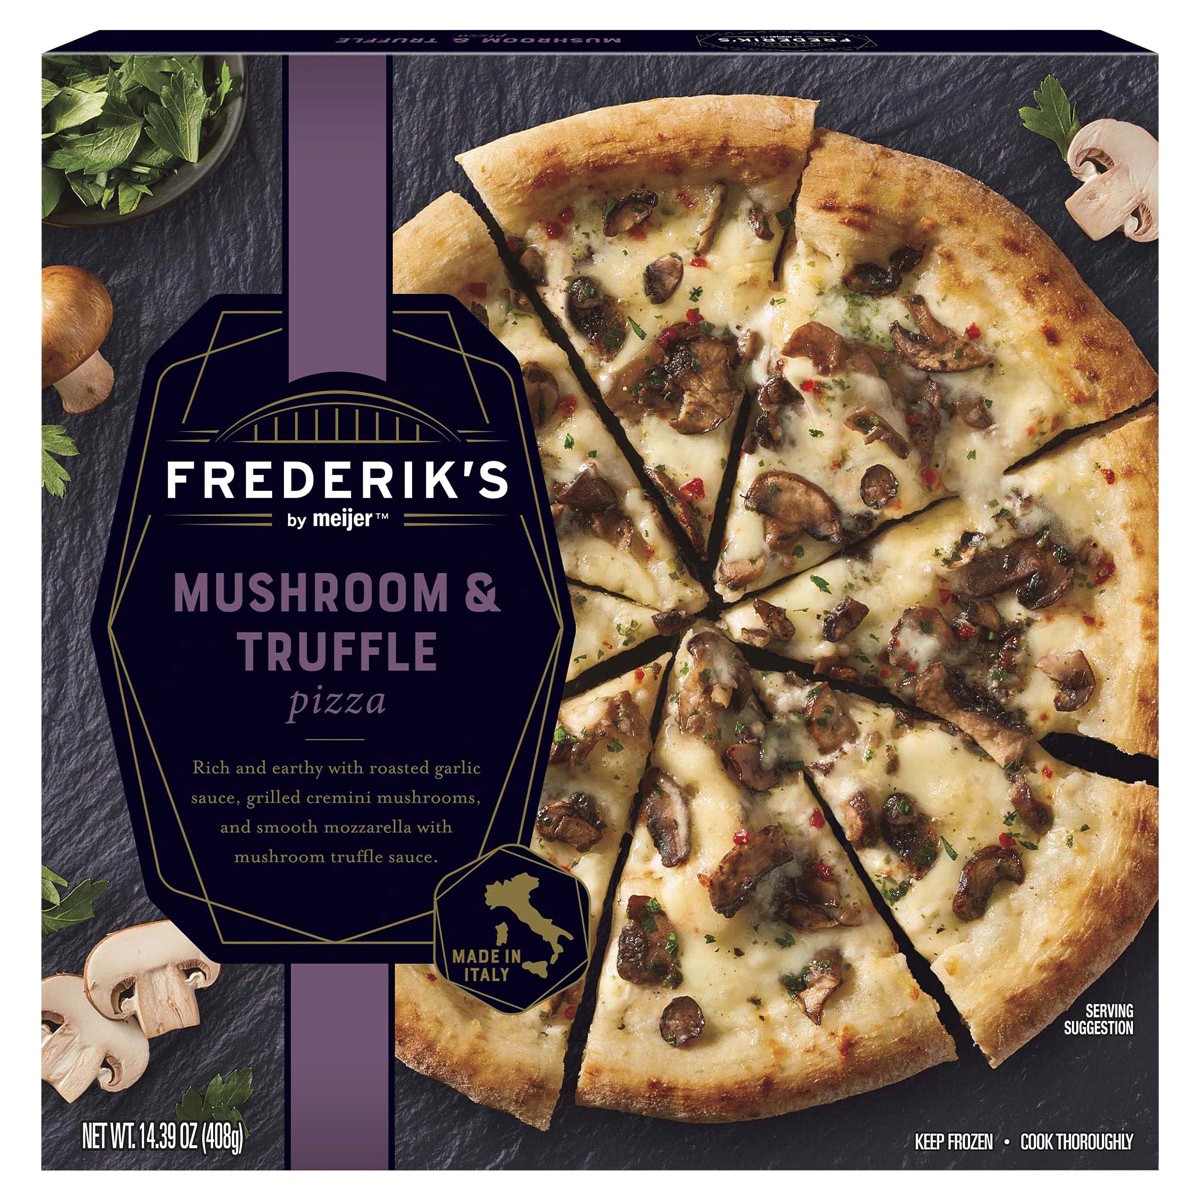 slide 1 of 29, FREDERIKS BY MEIJER Frederik's by Meijer Mushroom & Truffle Pizza, 14.39 oz